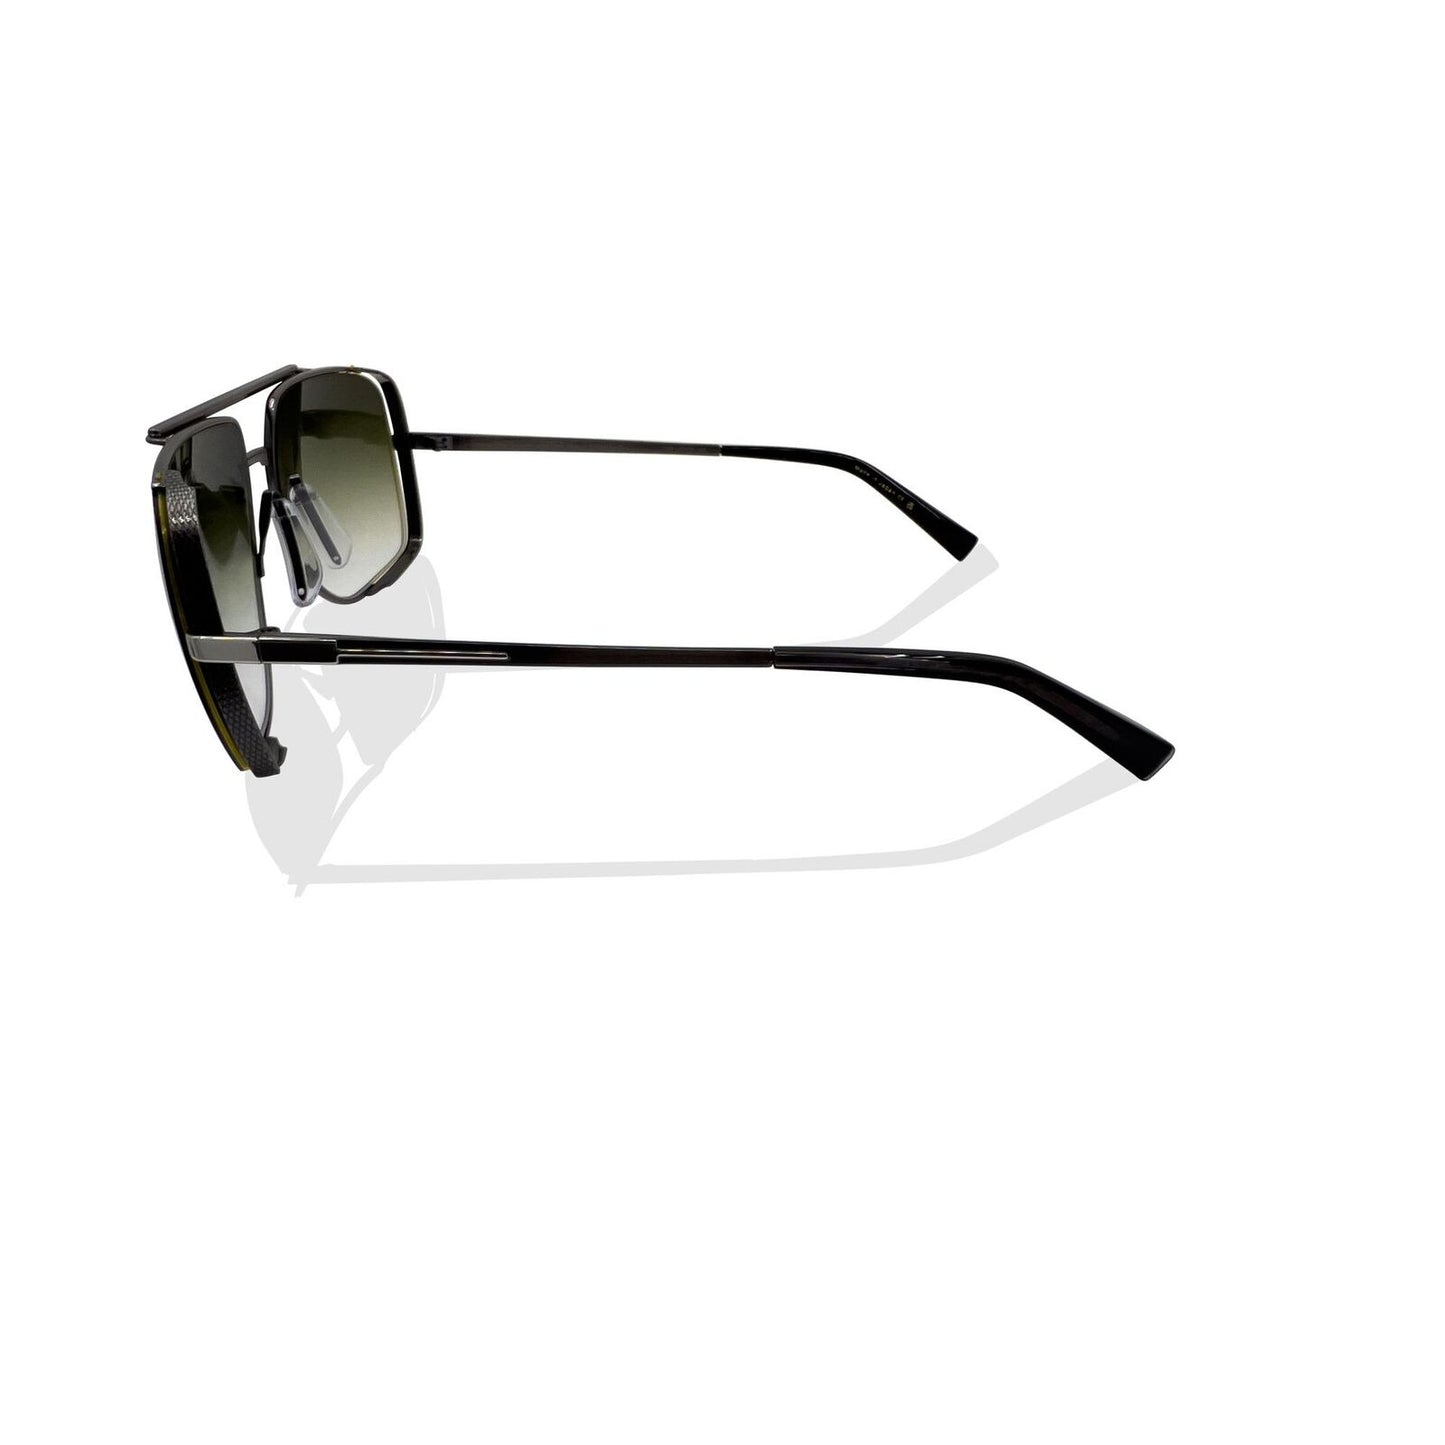 Dita DRX-2010A-60-Z 57mm New Sunglasses